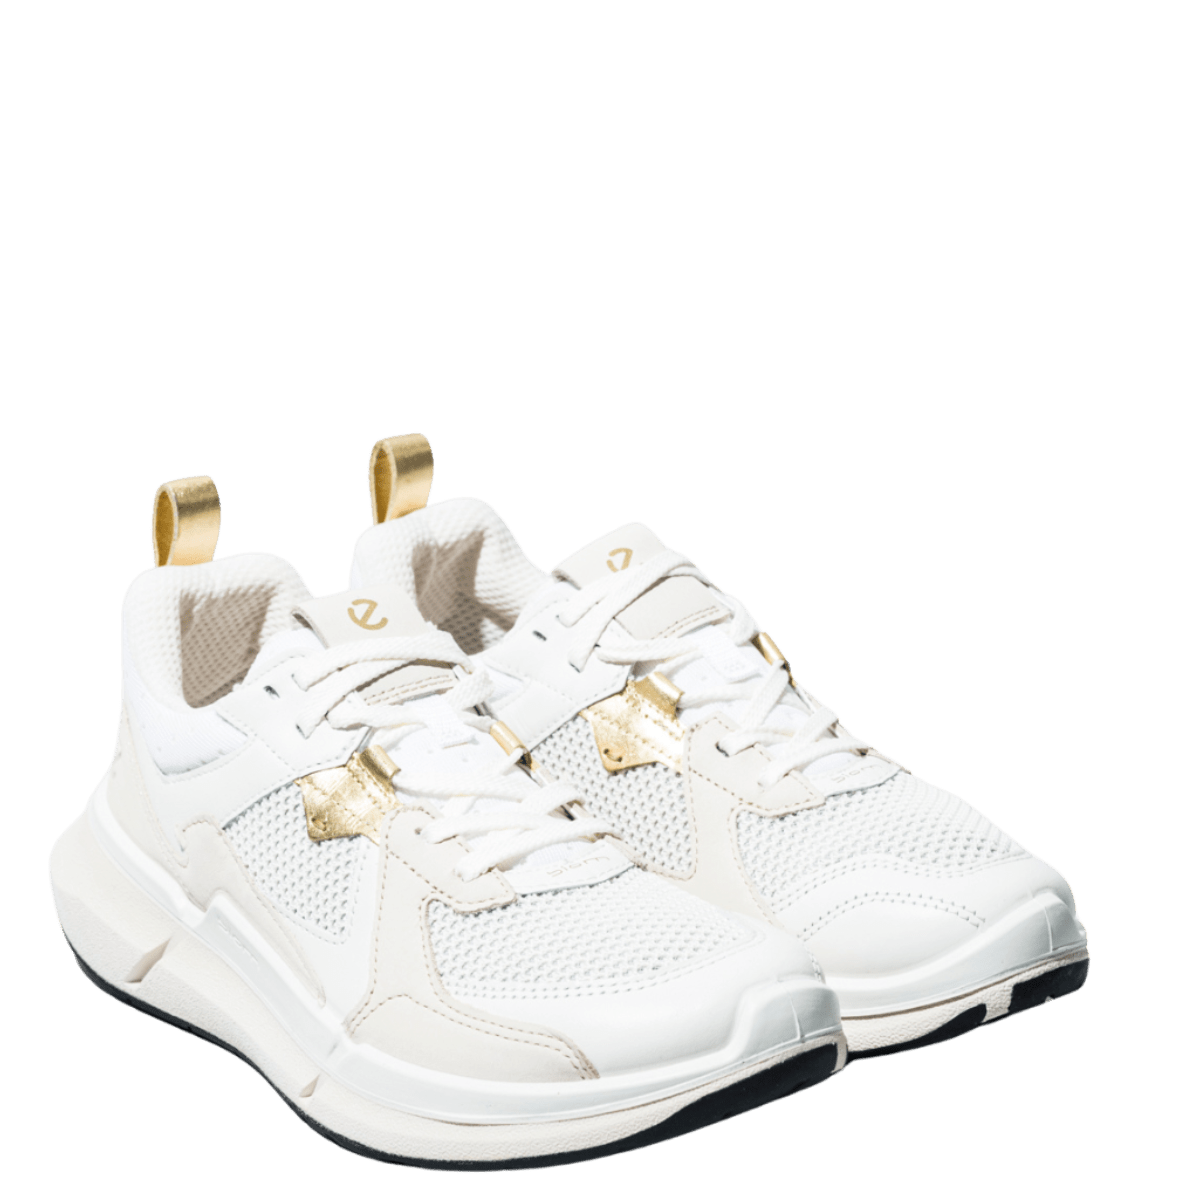 Sneaker Ecco Biom 2.2 White/Limestone/Shadow White - Ecco - Calzature Savorè